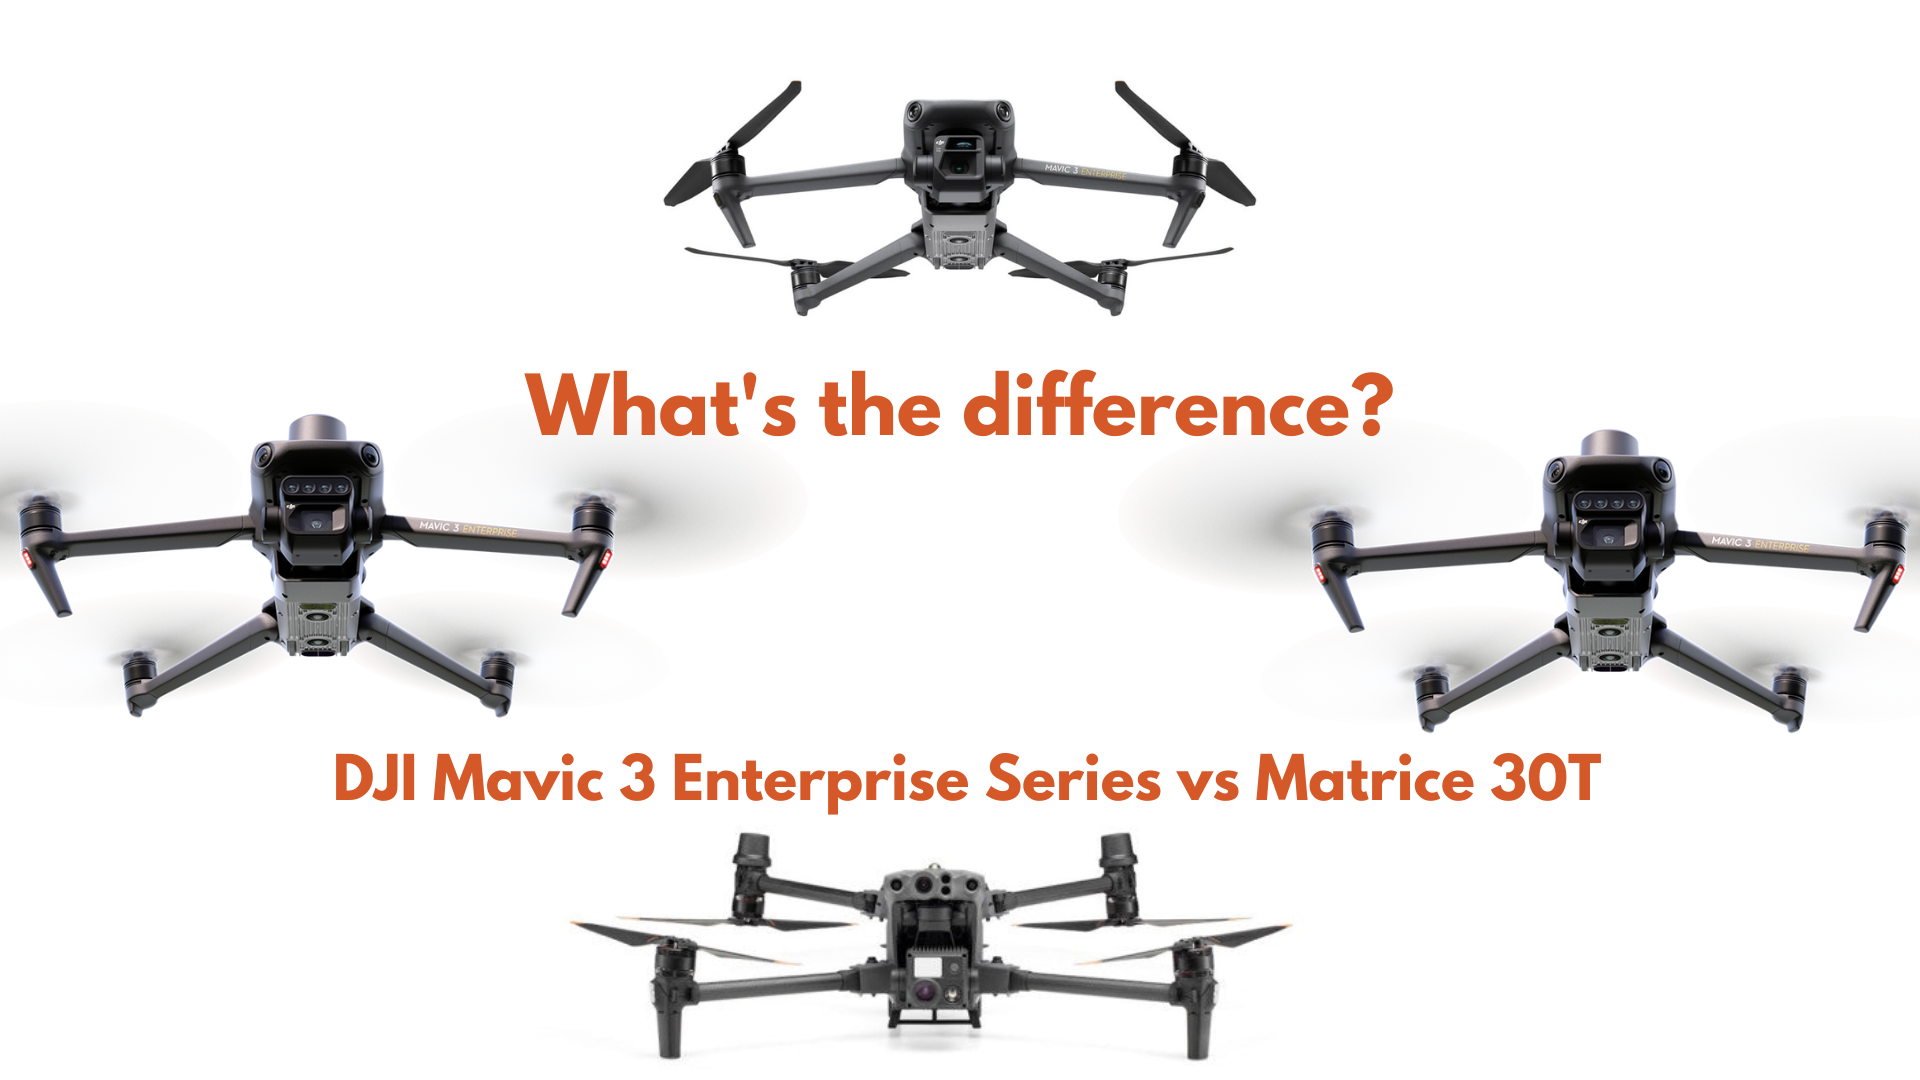 Mavic 3 Enterprise: Built for Mapping